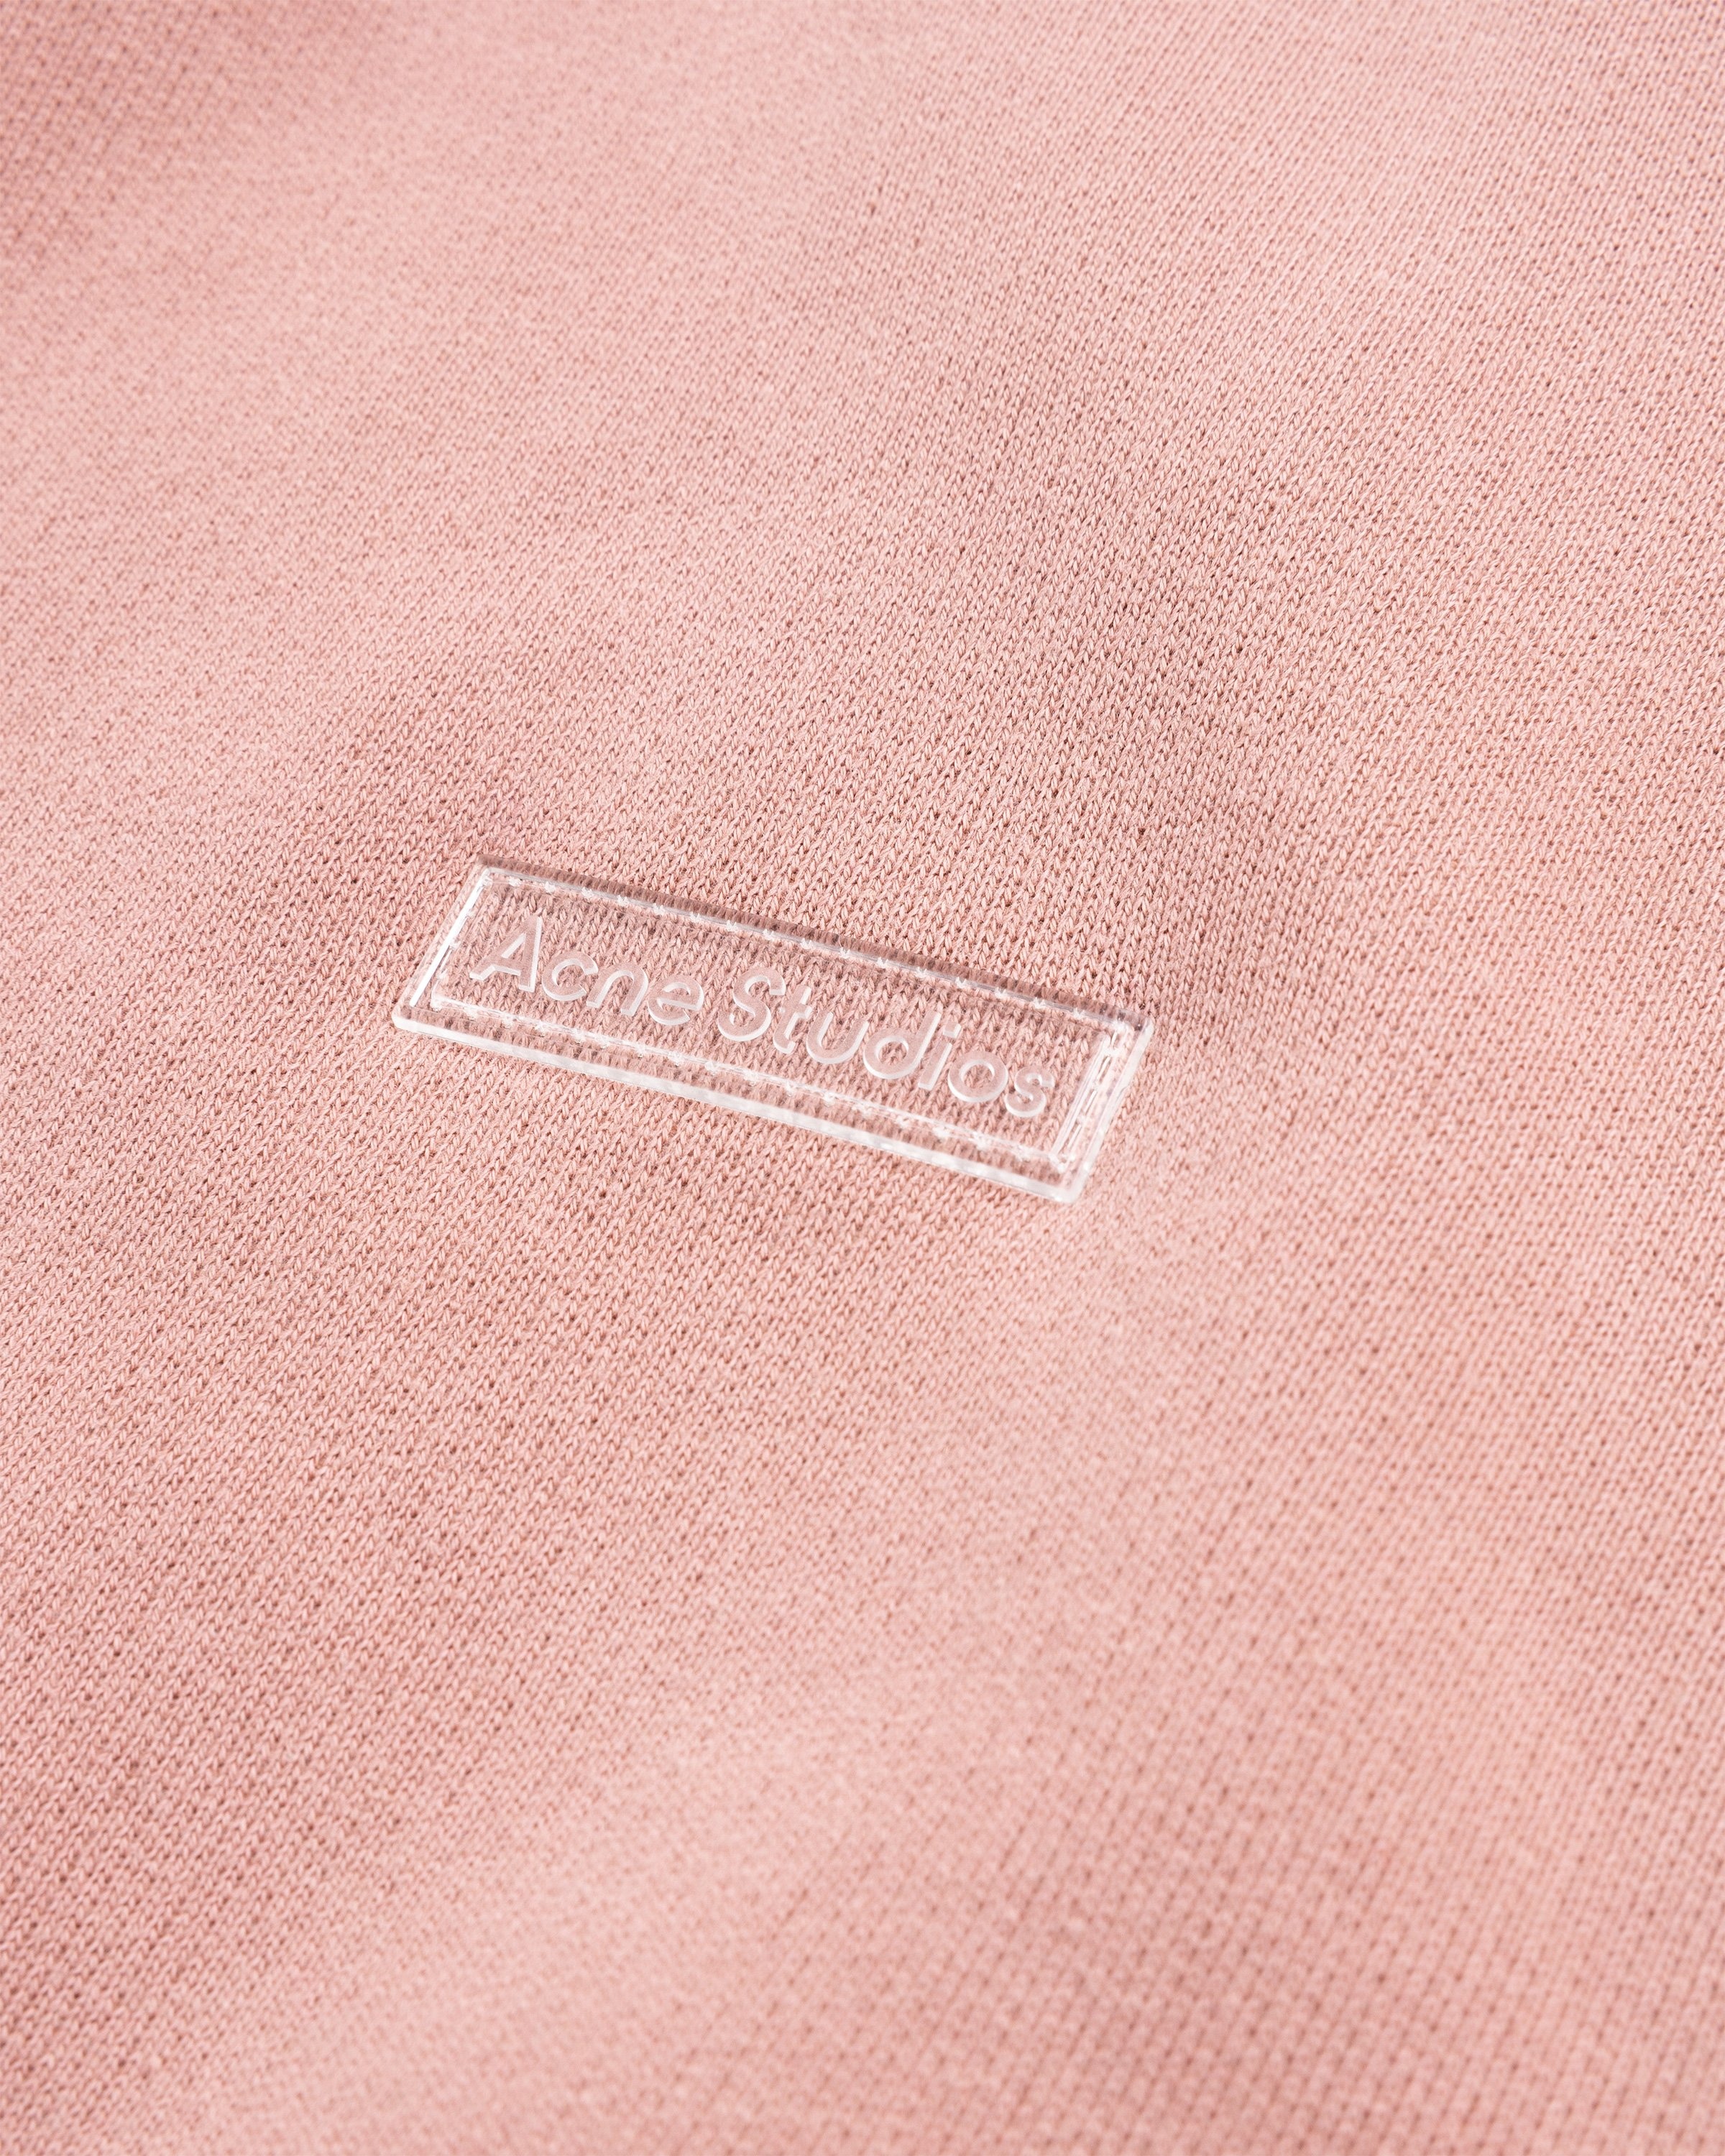 Acne Studios – Hooded Sweatshirt Vintage Pink - Hoodies - Pink - Image 5